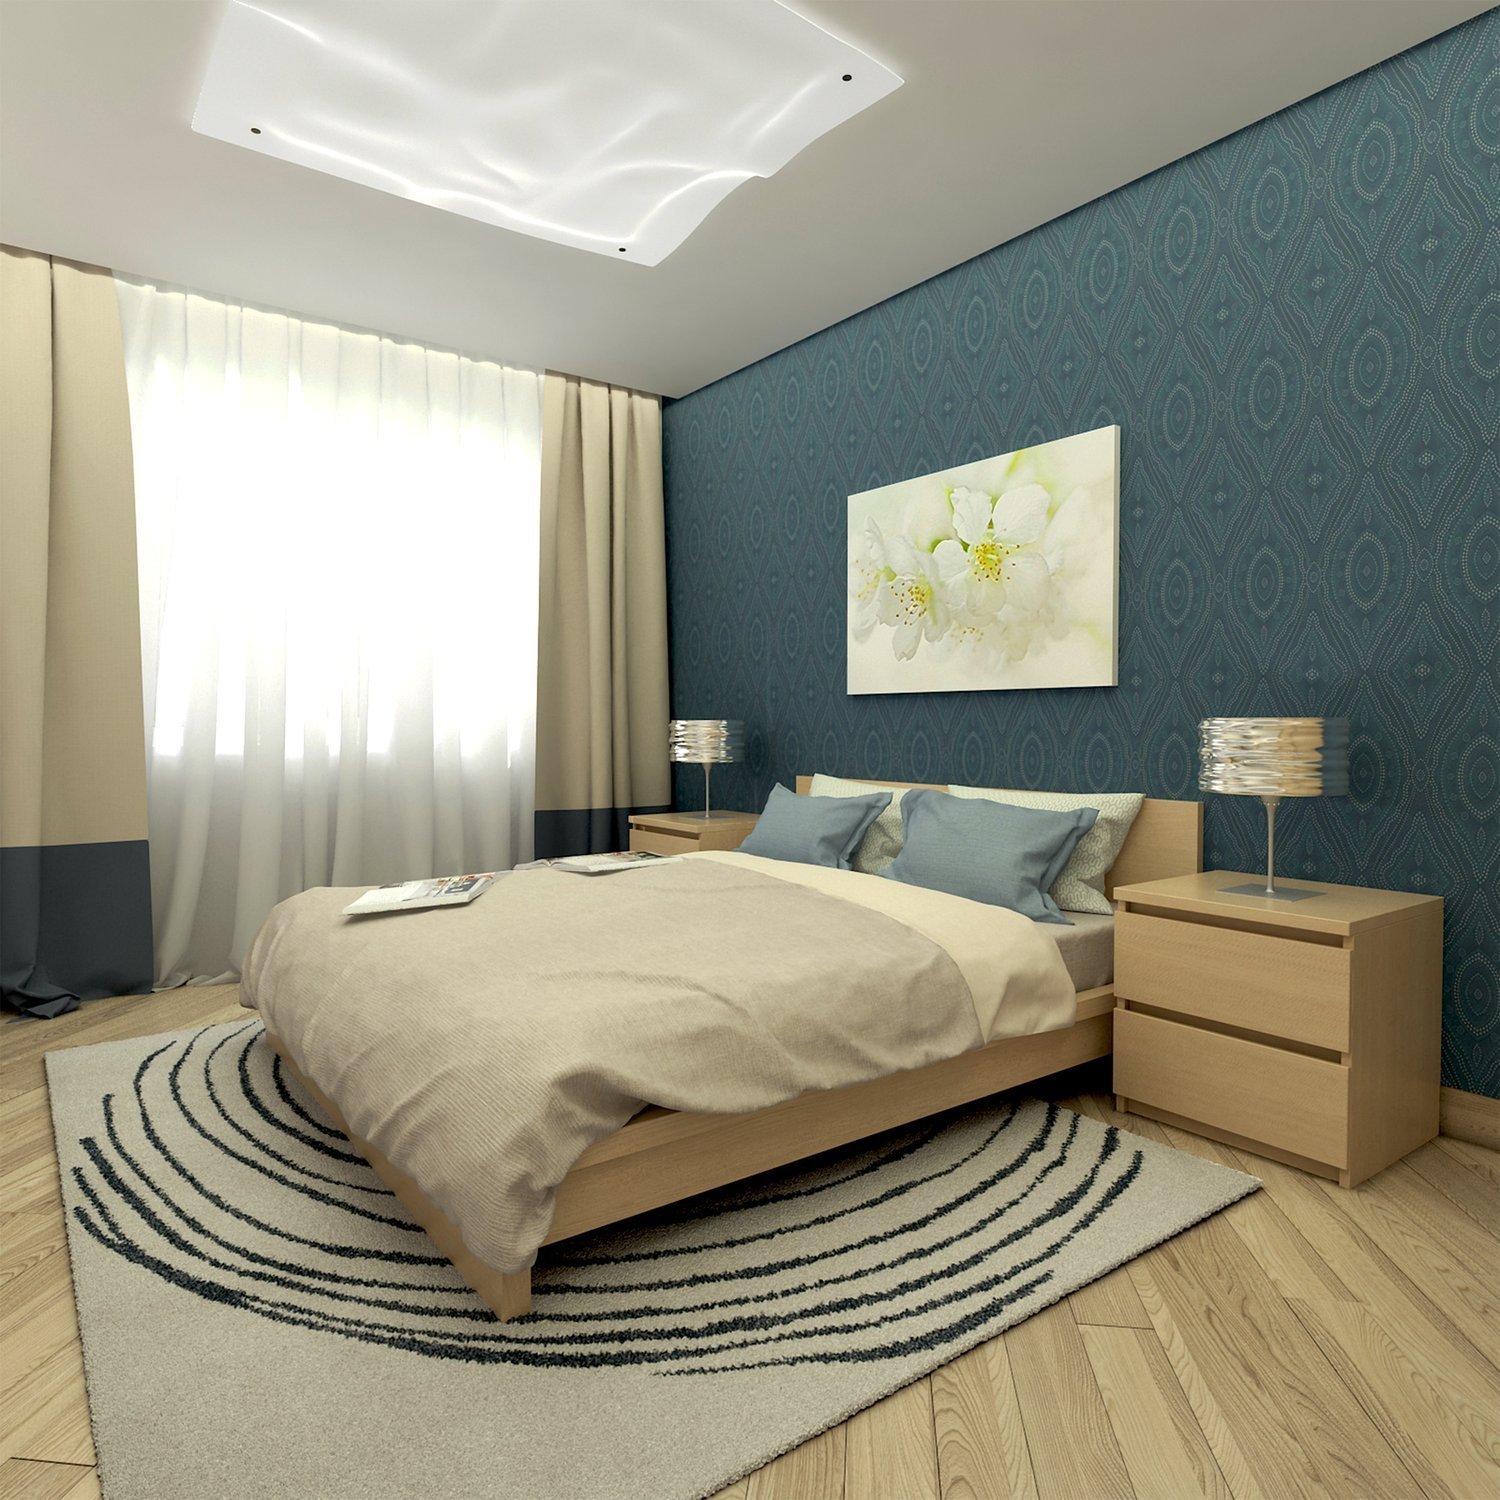 Идеи для спальни: актуальные и доступные варианты оформления интерьера спальни (105 фото)